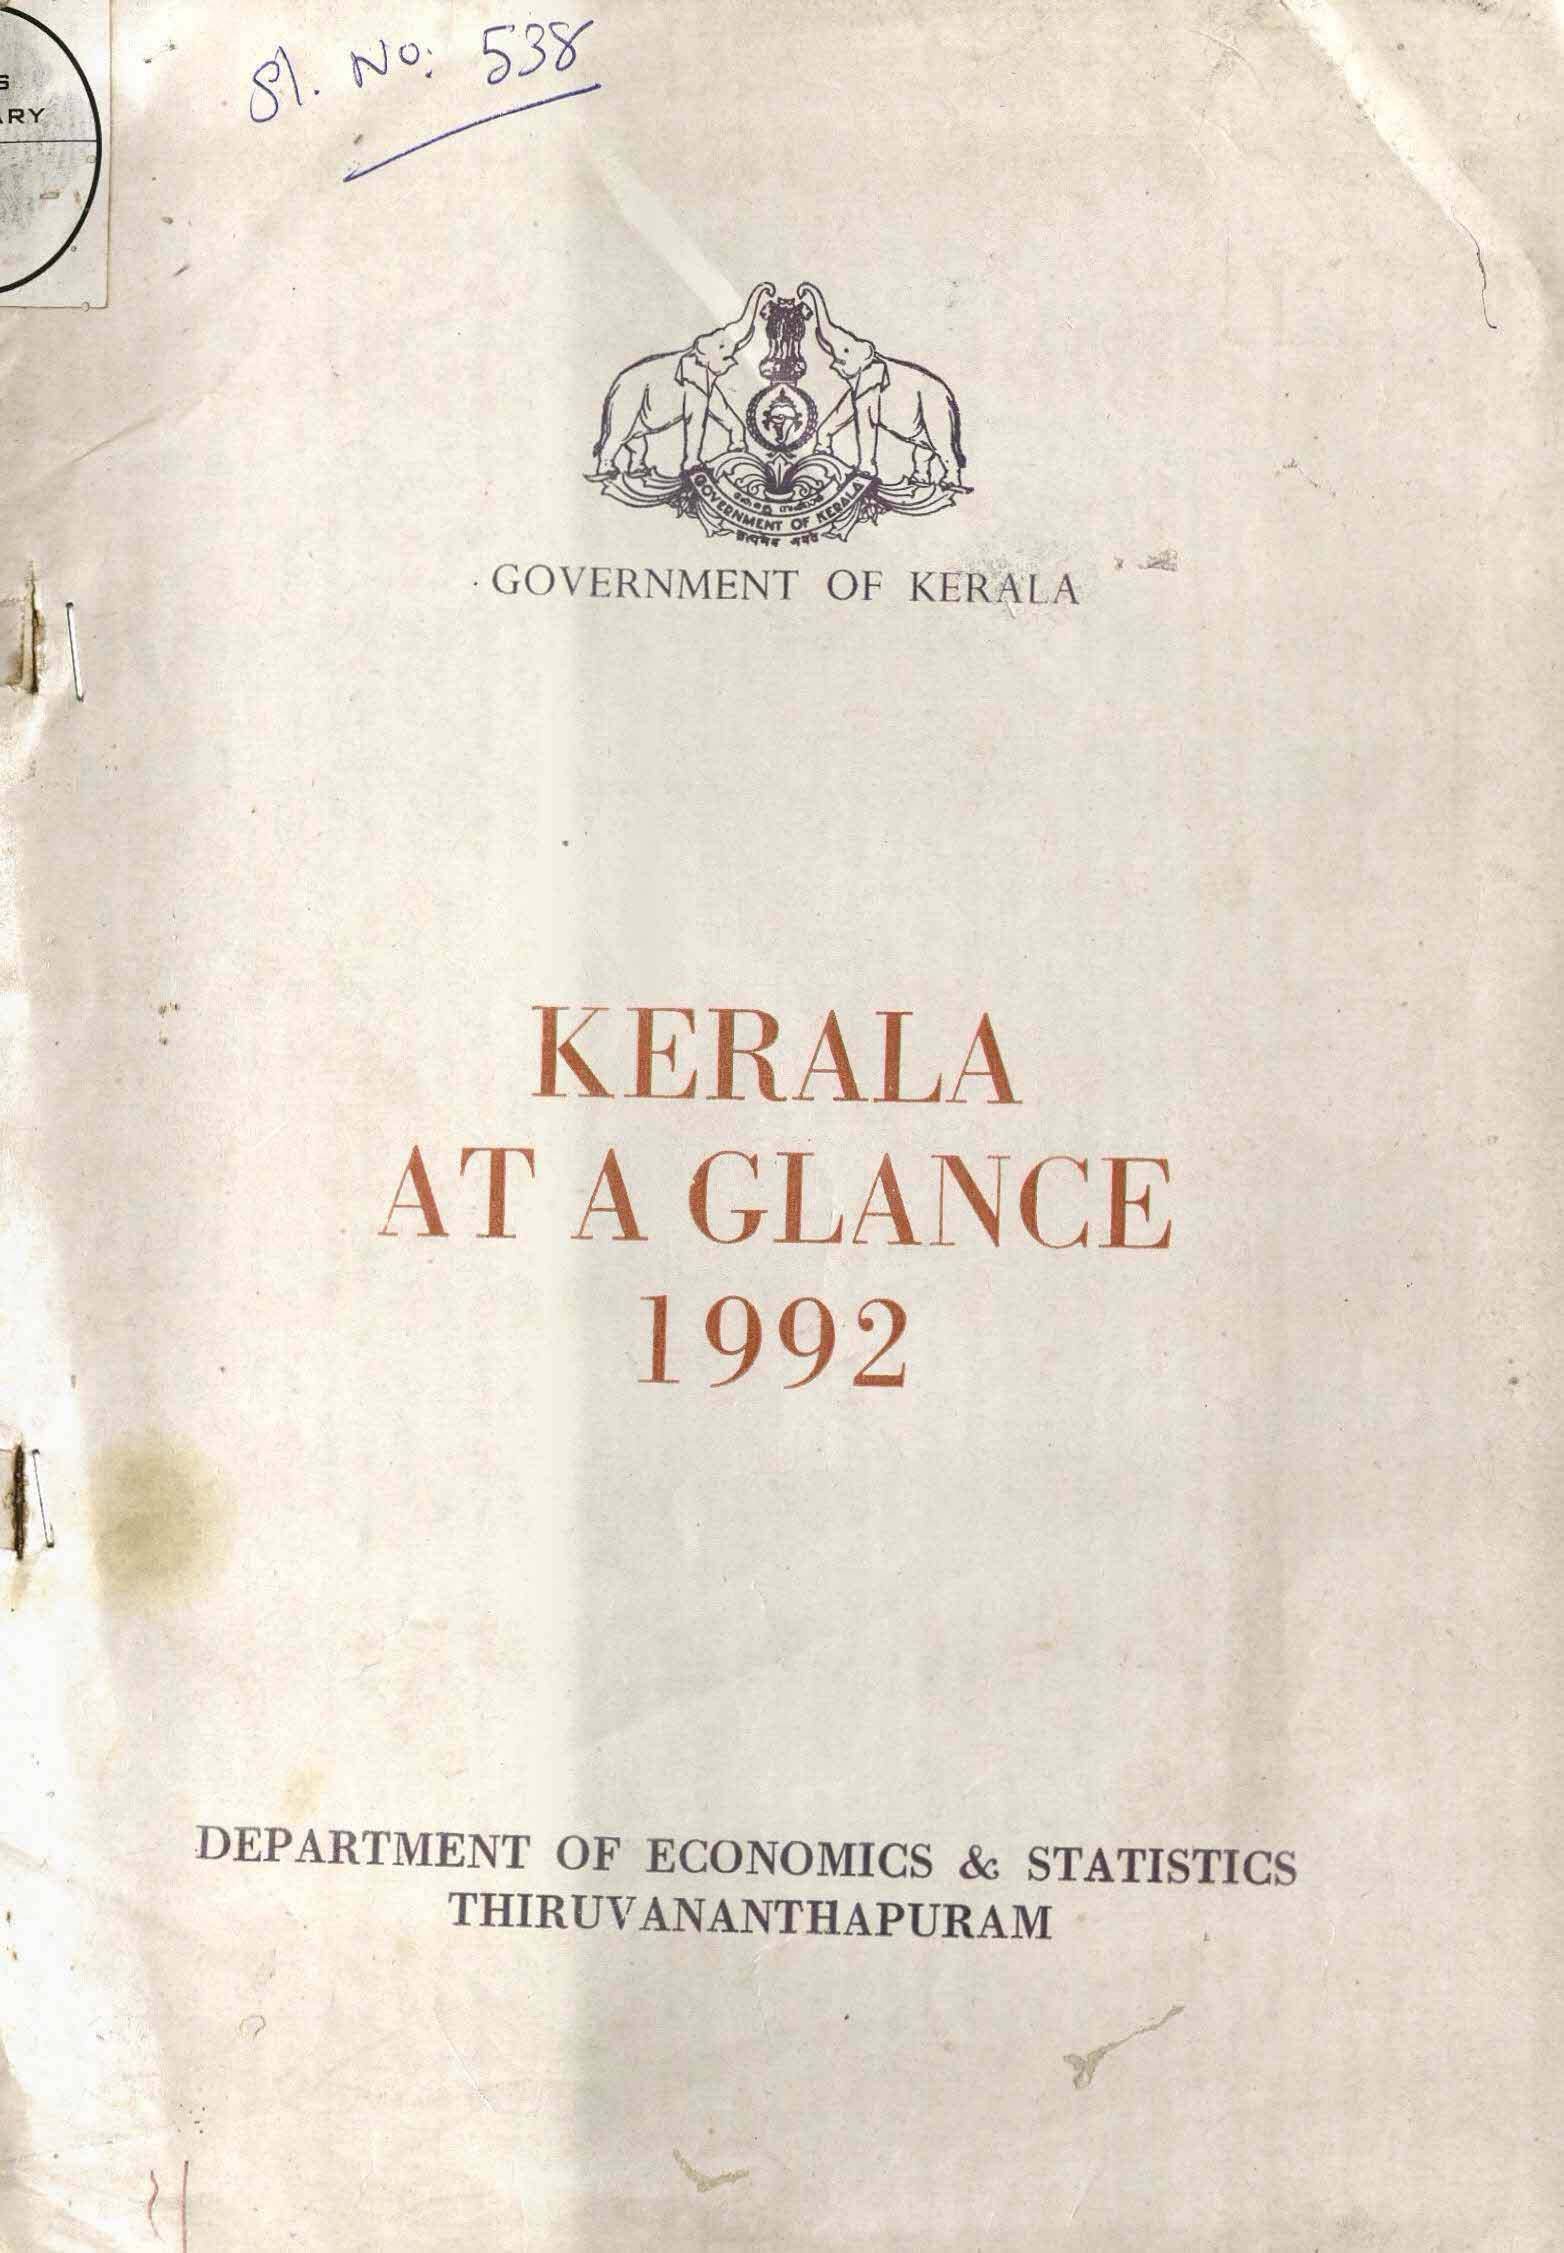 KERALA AT A GLANCE 1992